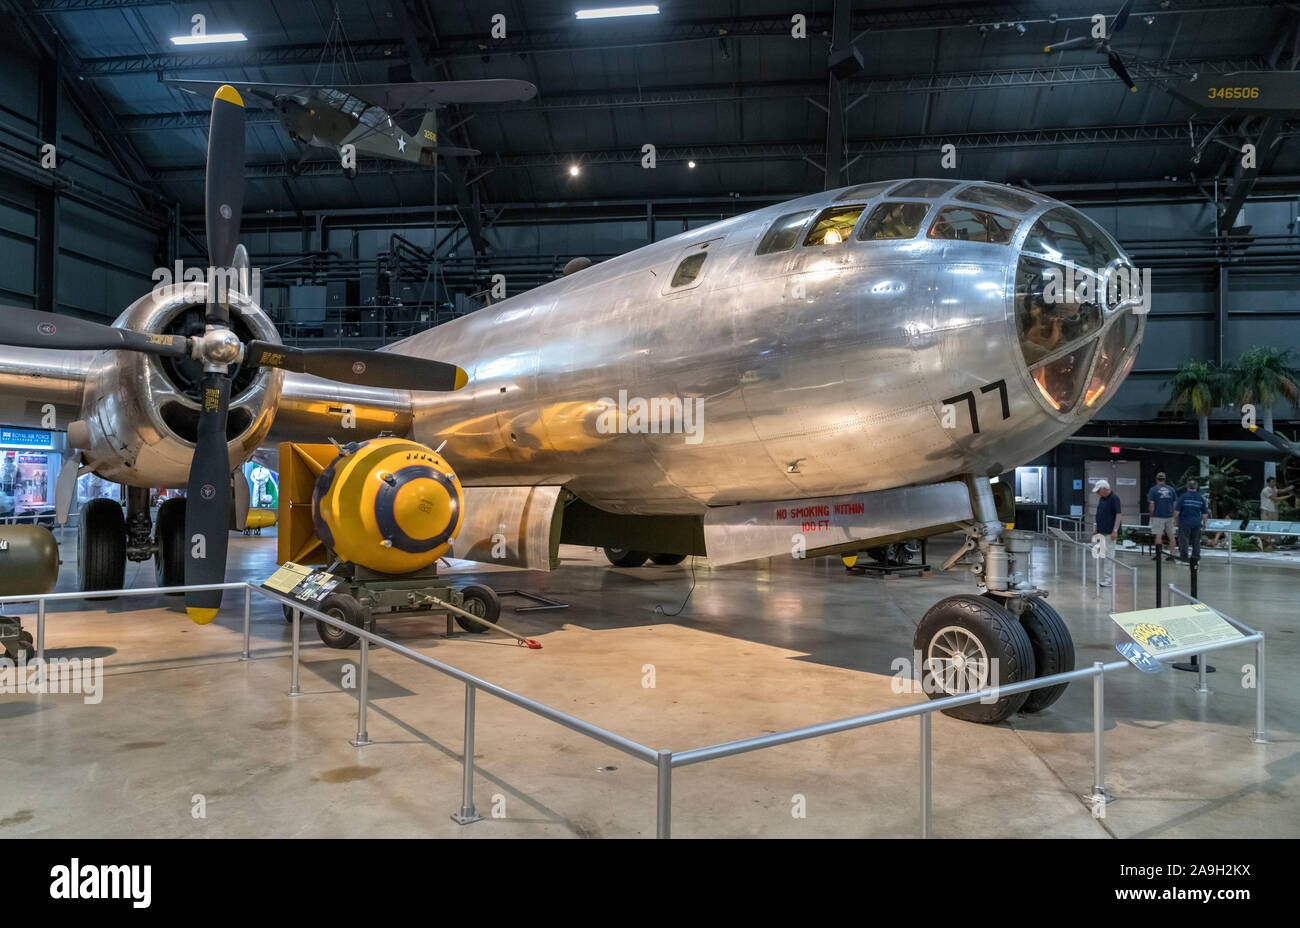 Bockscar, un Boeing B-29 Superfortress qui a laissé tomber la bombe atomique sur Nagasaki, National Museum of the United States Air Force, Dayton, OH, États-Unis Banque D'Images